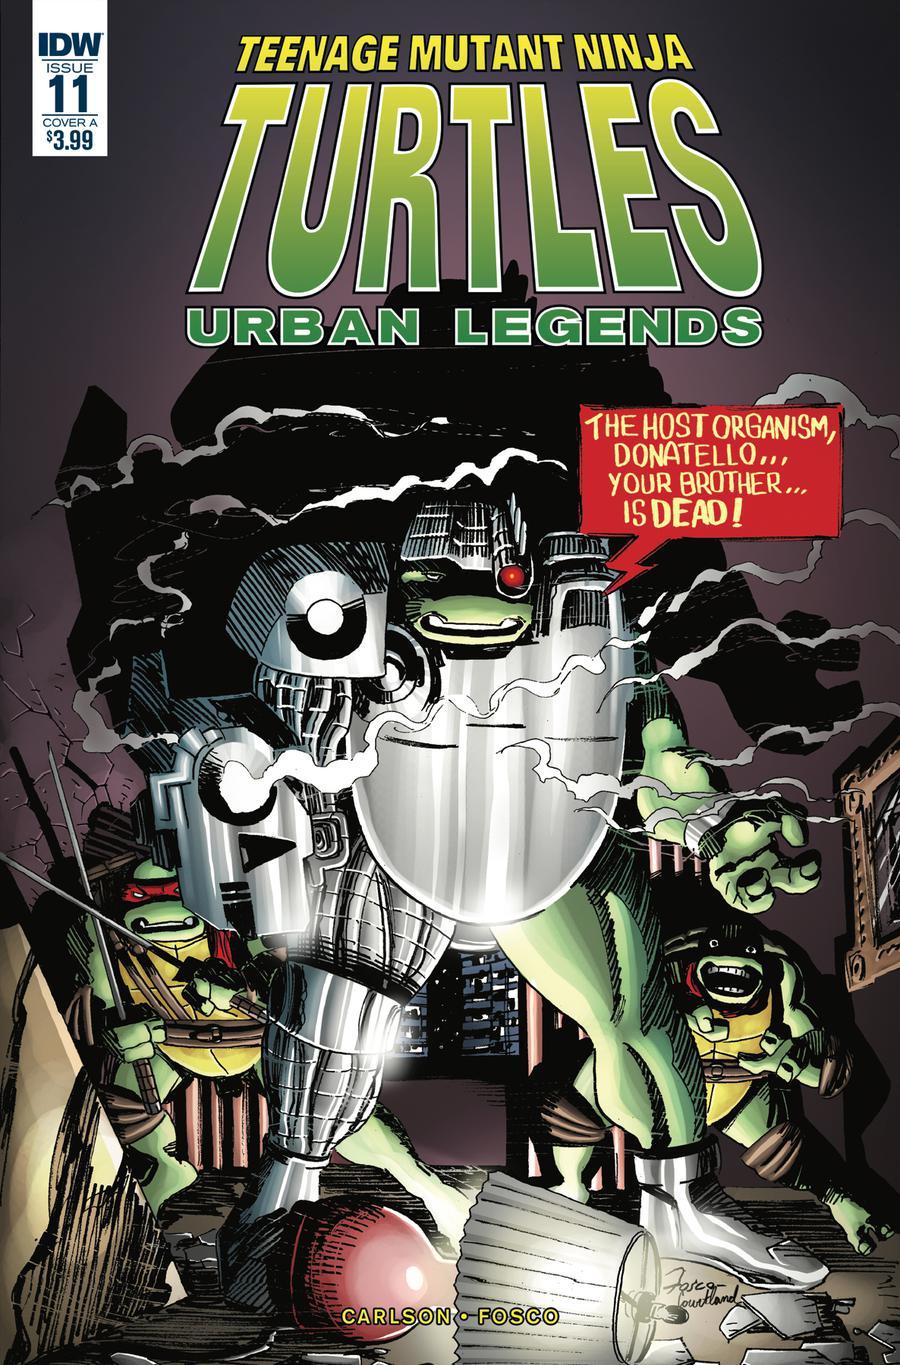 Teenage Mutant Ninja Turtles Urban Legends Vol. 1 #11